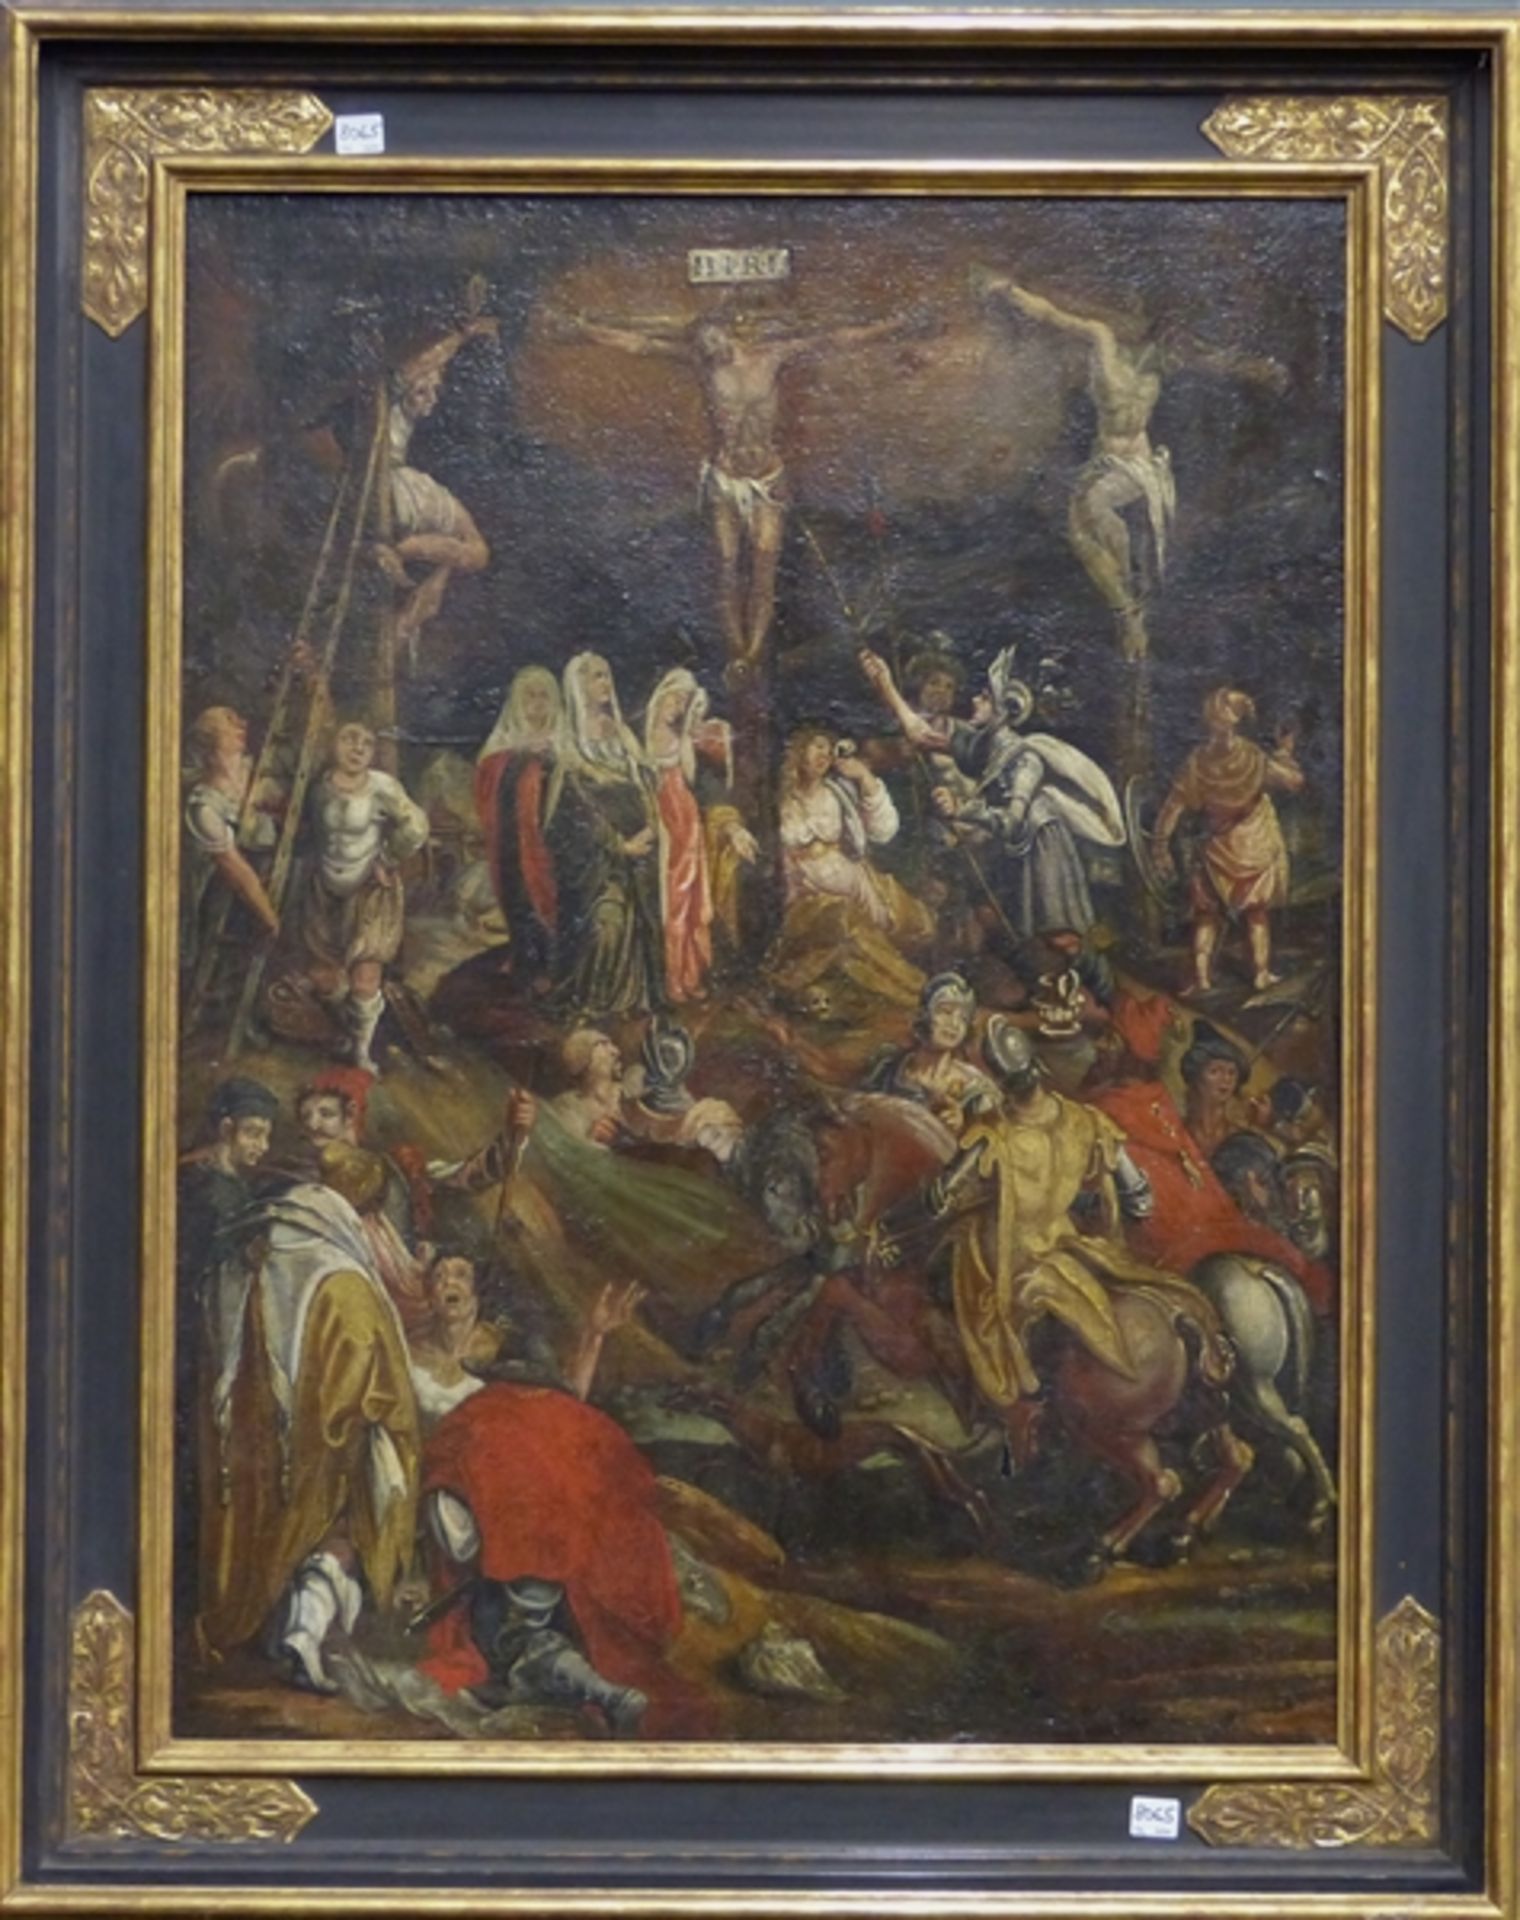 Heiligendarstellung, 17. Jh. Öl auf Leinen auf Holz, Darstellung des Kalvarienbergs mit den 3